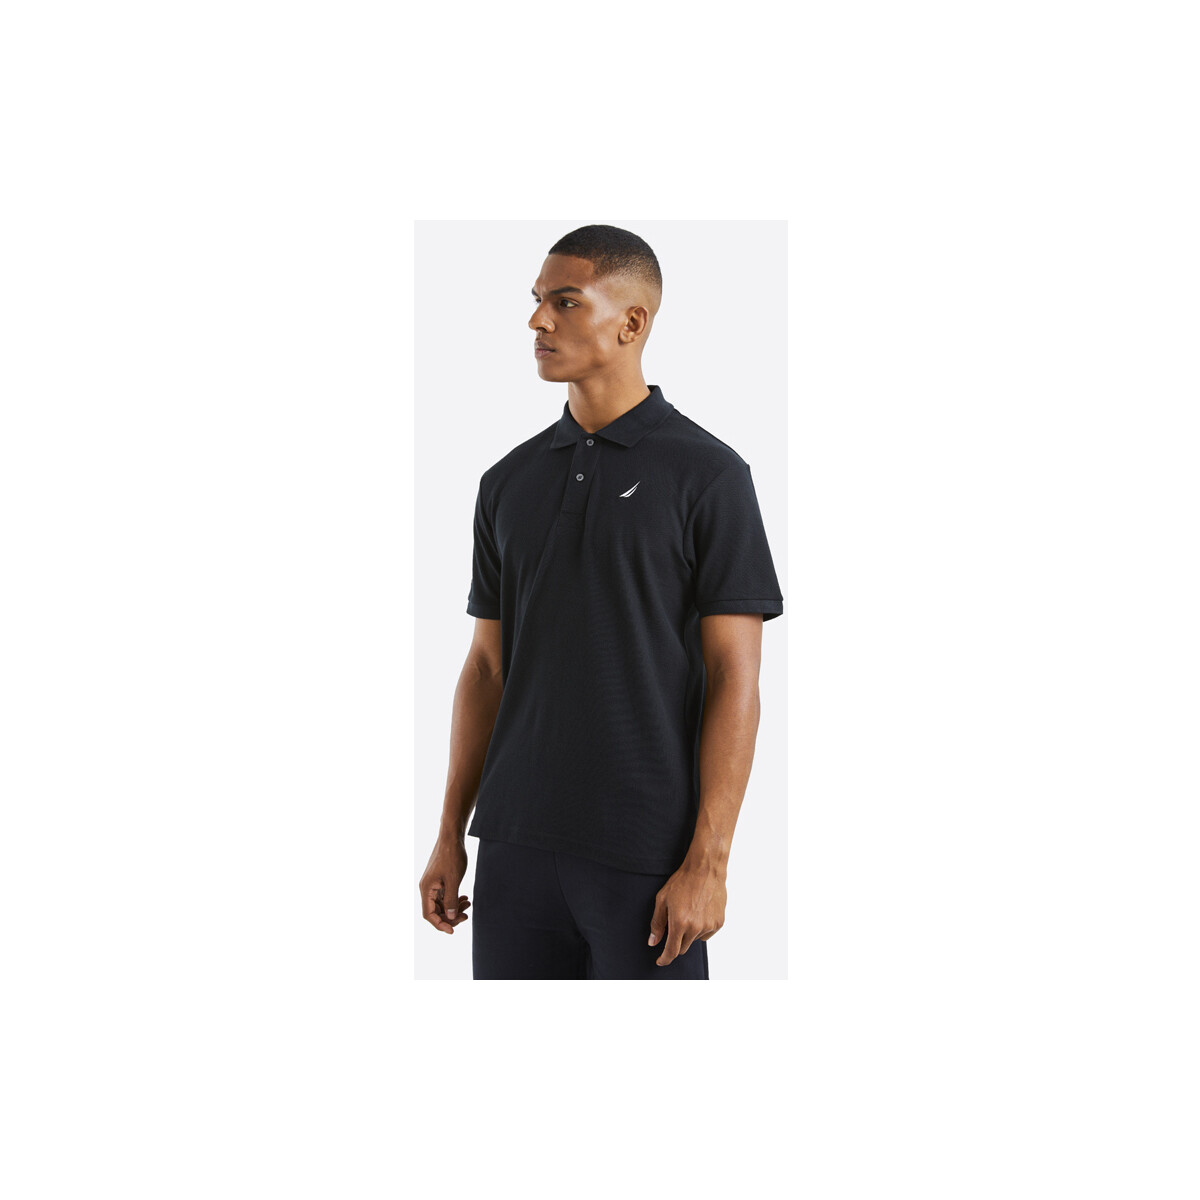 Vêtements Homme Débardeurs / T-shirts sans manche Nautica Calder Polo Noir